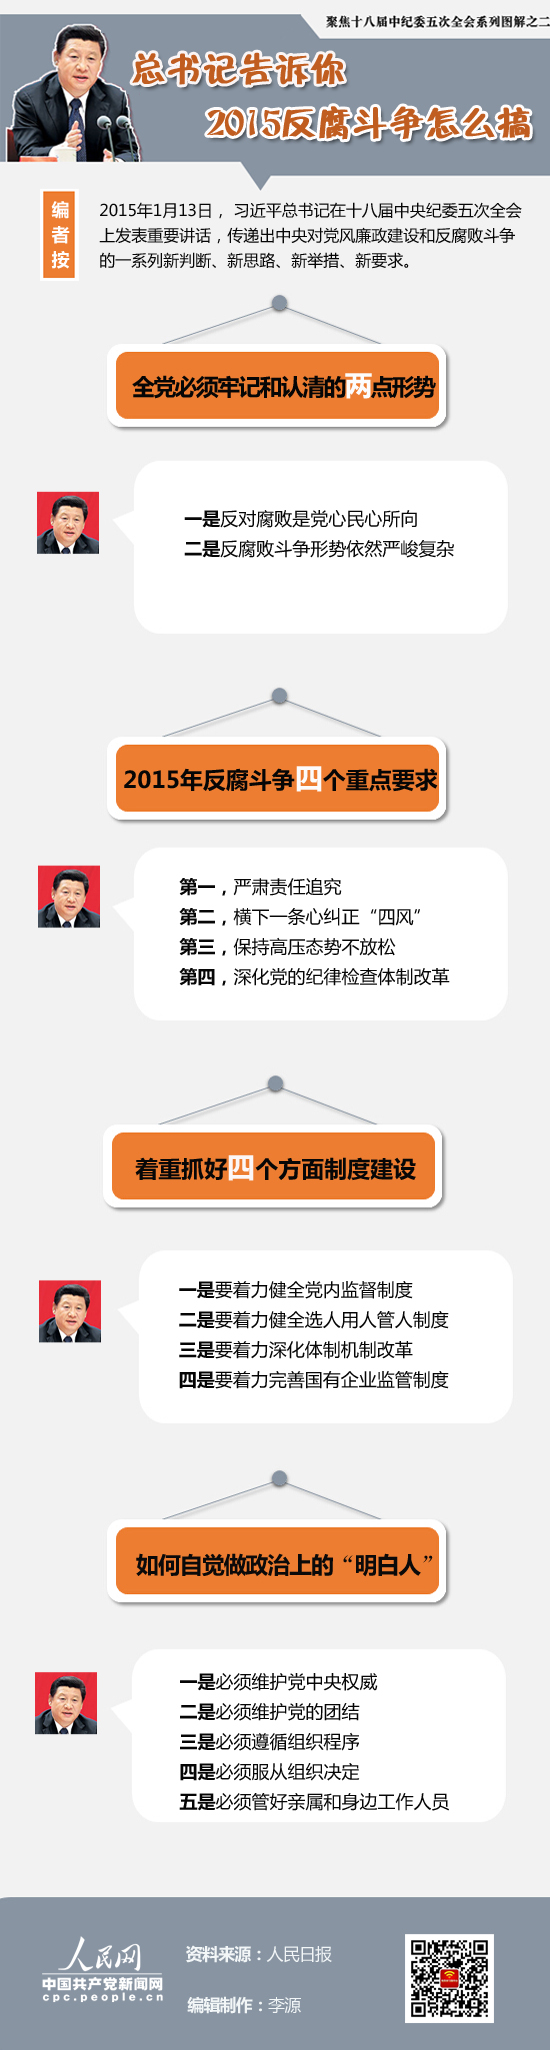 【图解】习近平总书记告诉你2015反腐败斗争怎么搞